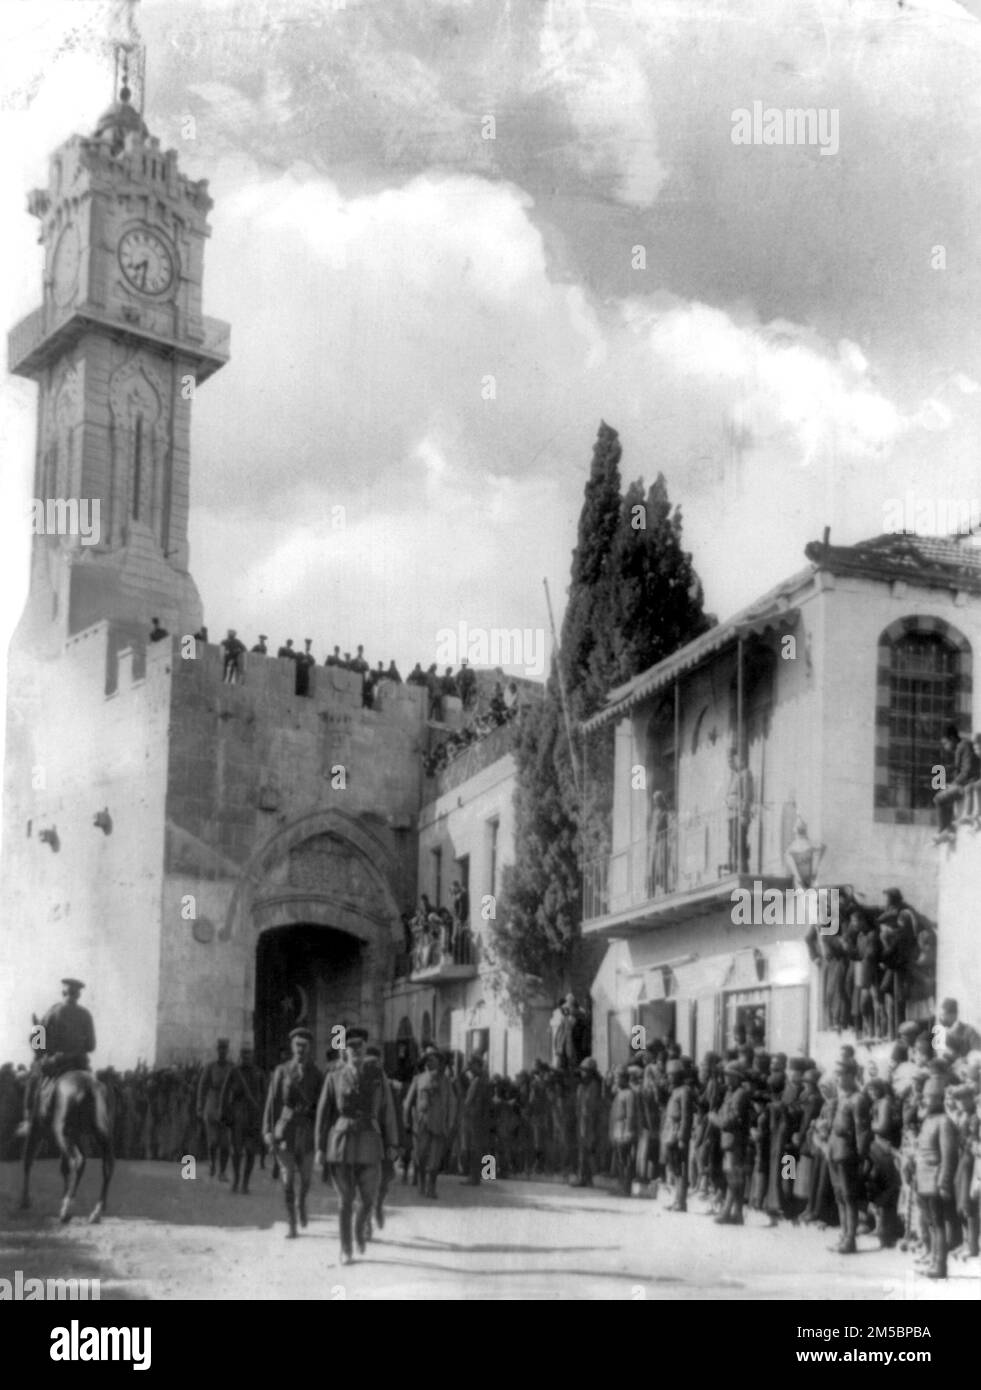 Lord Edmund Allenby betrat das Jaffa-Tor nach der britischen Gefangennahme von Jerusalem im Ersten Weltkrieg Er tritt zu Fuß ein, aus Respekt vor der alten Stadt Stockfoto